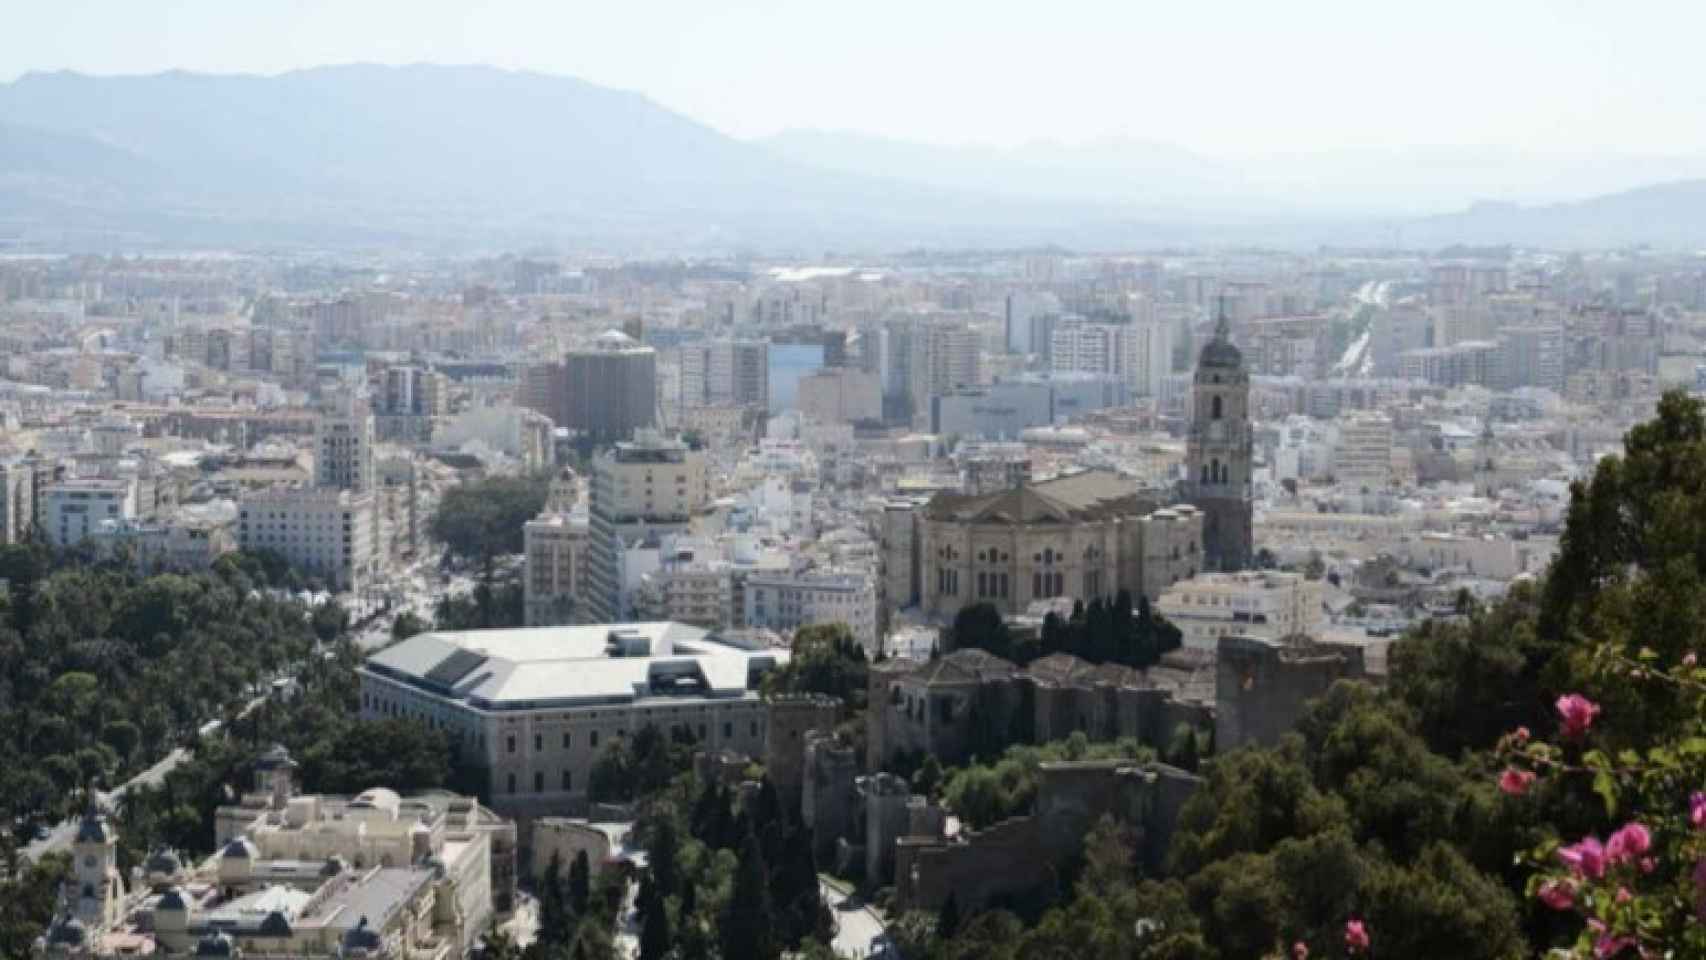 Vista de la Catedral de Málaga con el tejado a dos aguas que ahora se proyecta.